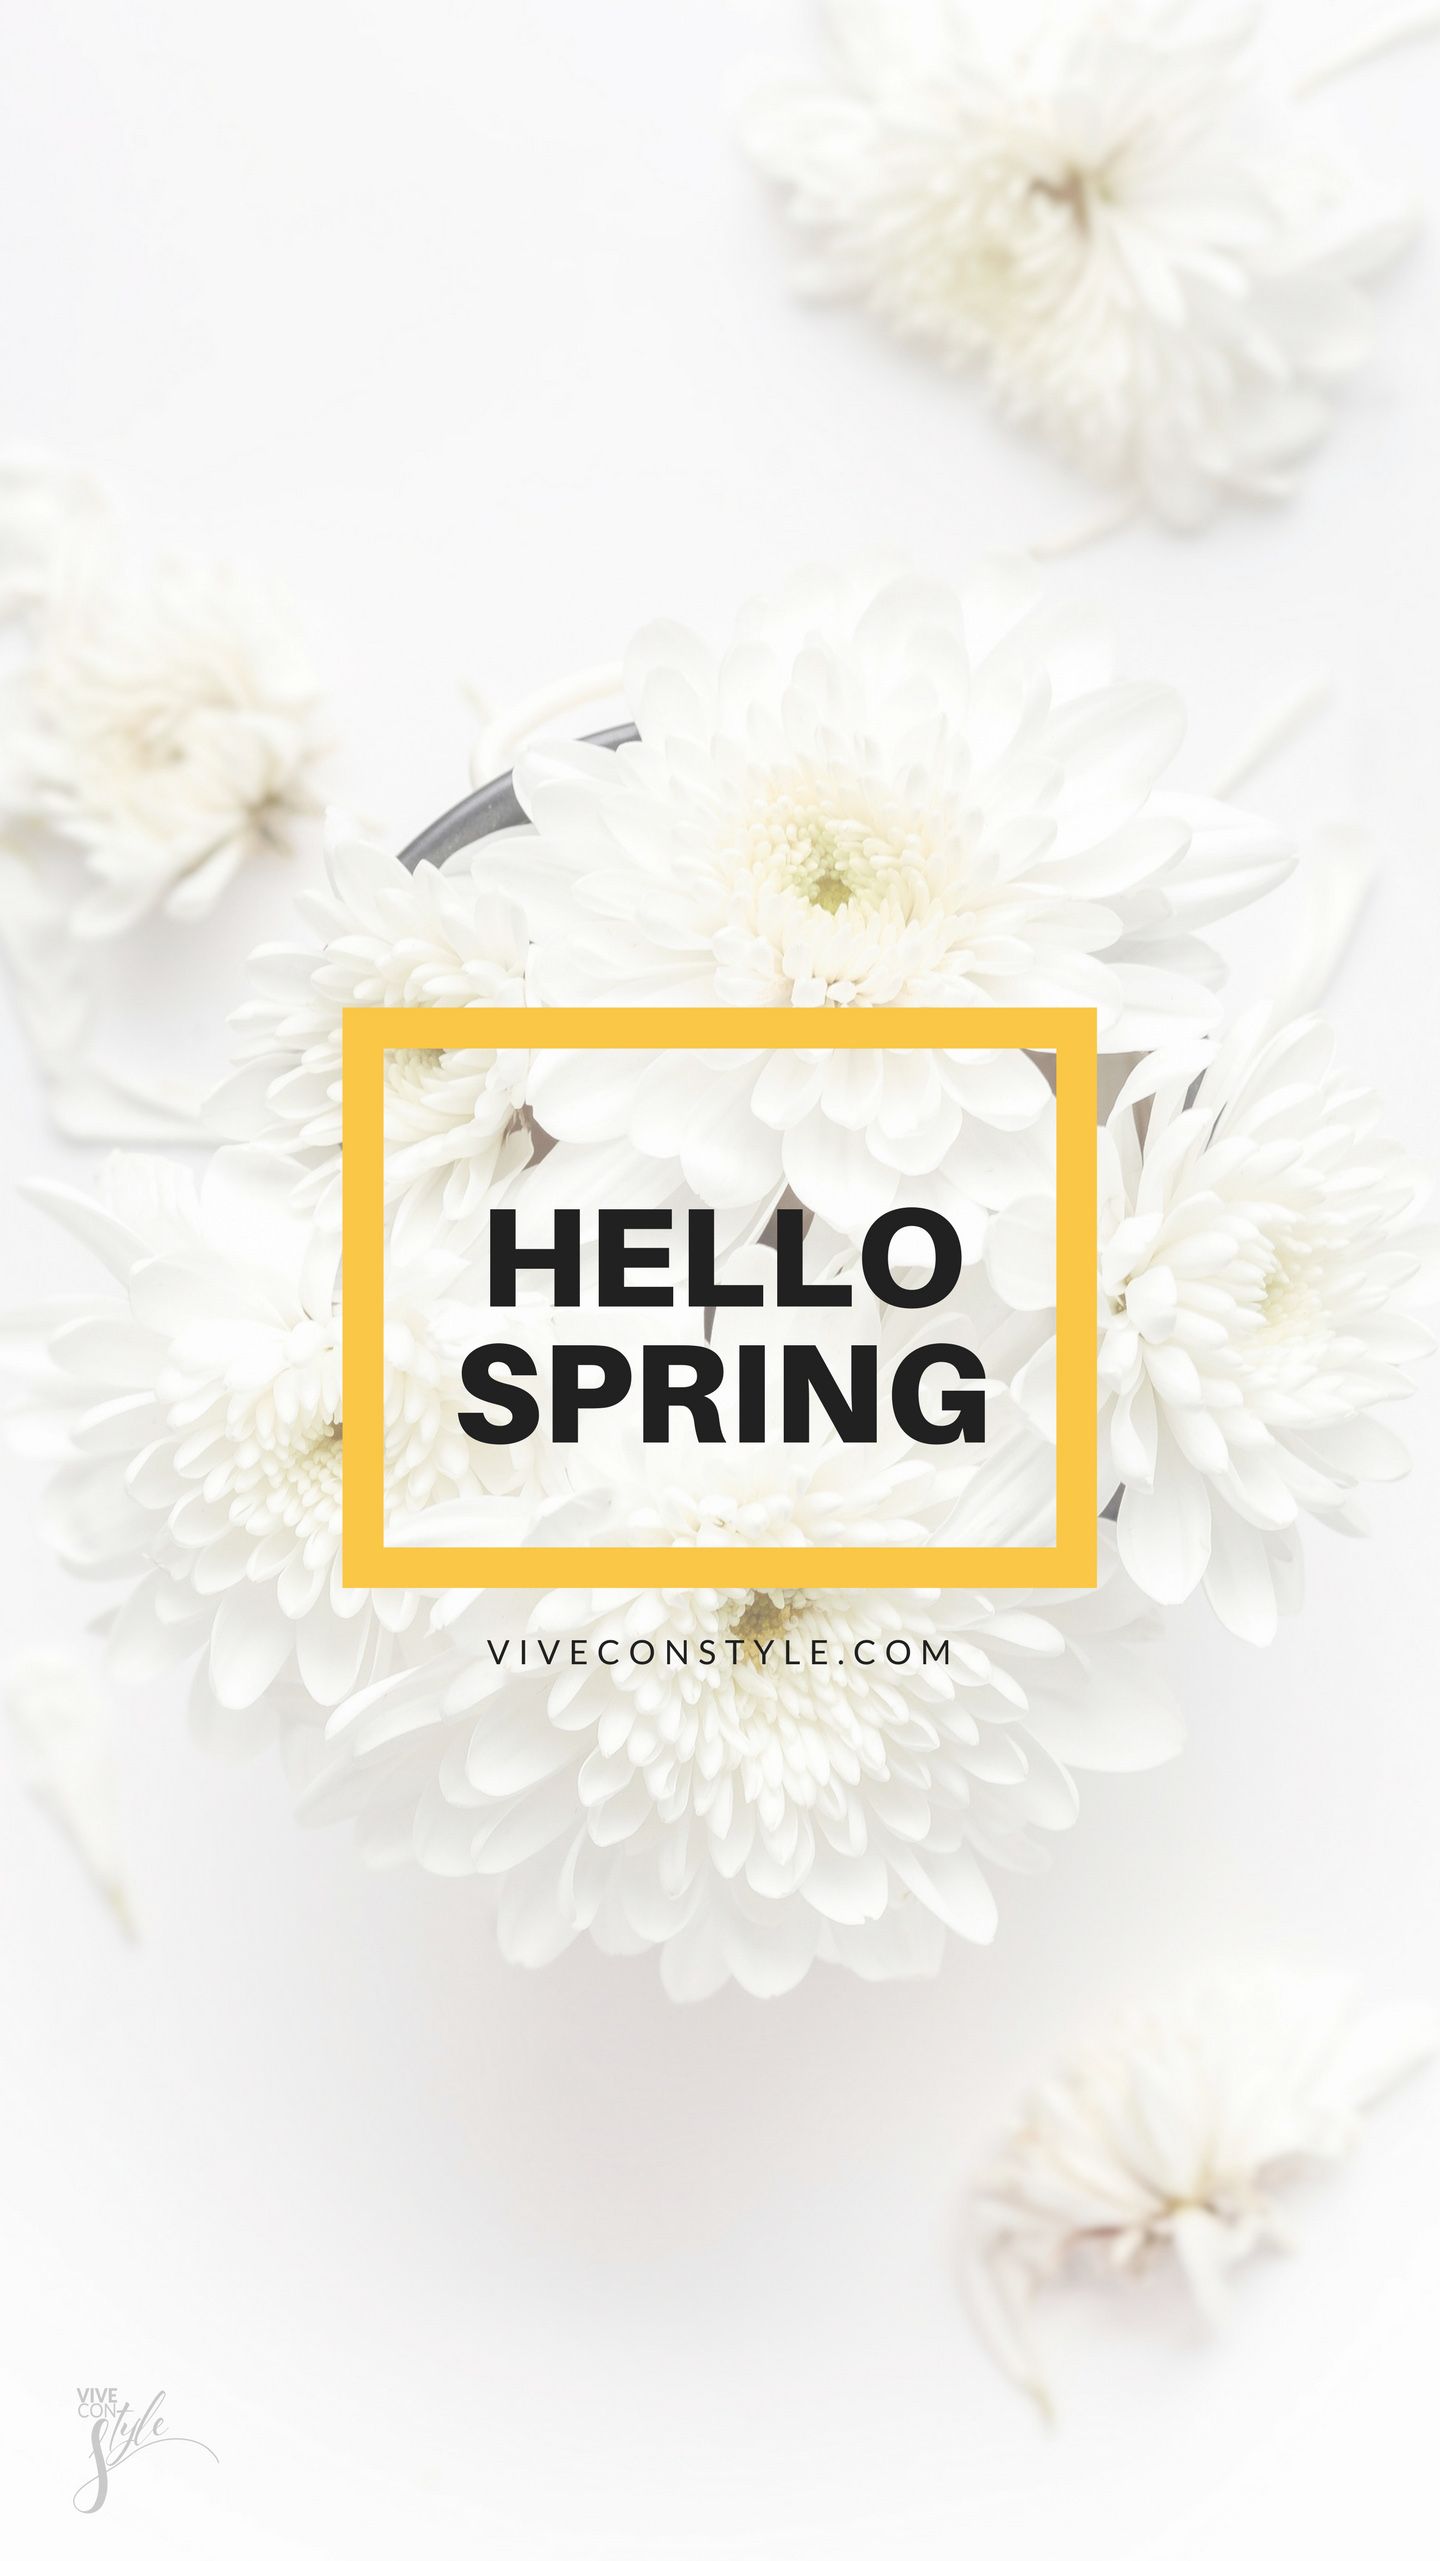 Hello Spring mobile wallpaper. VIVE CON STYLE